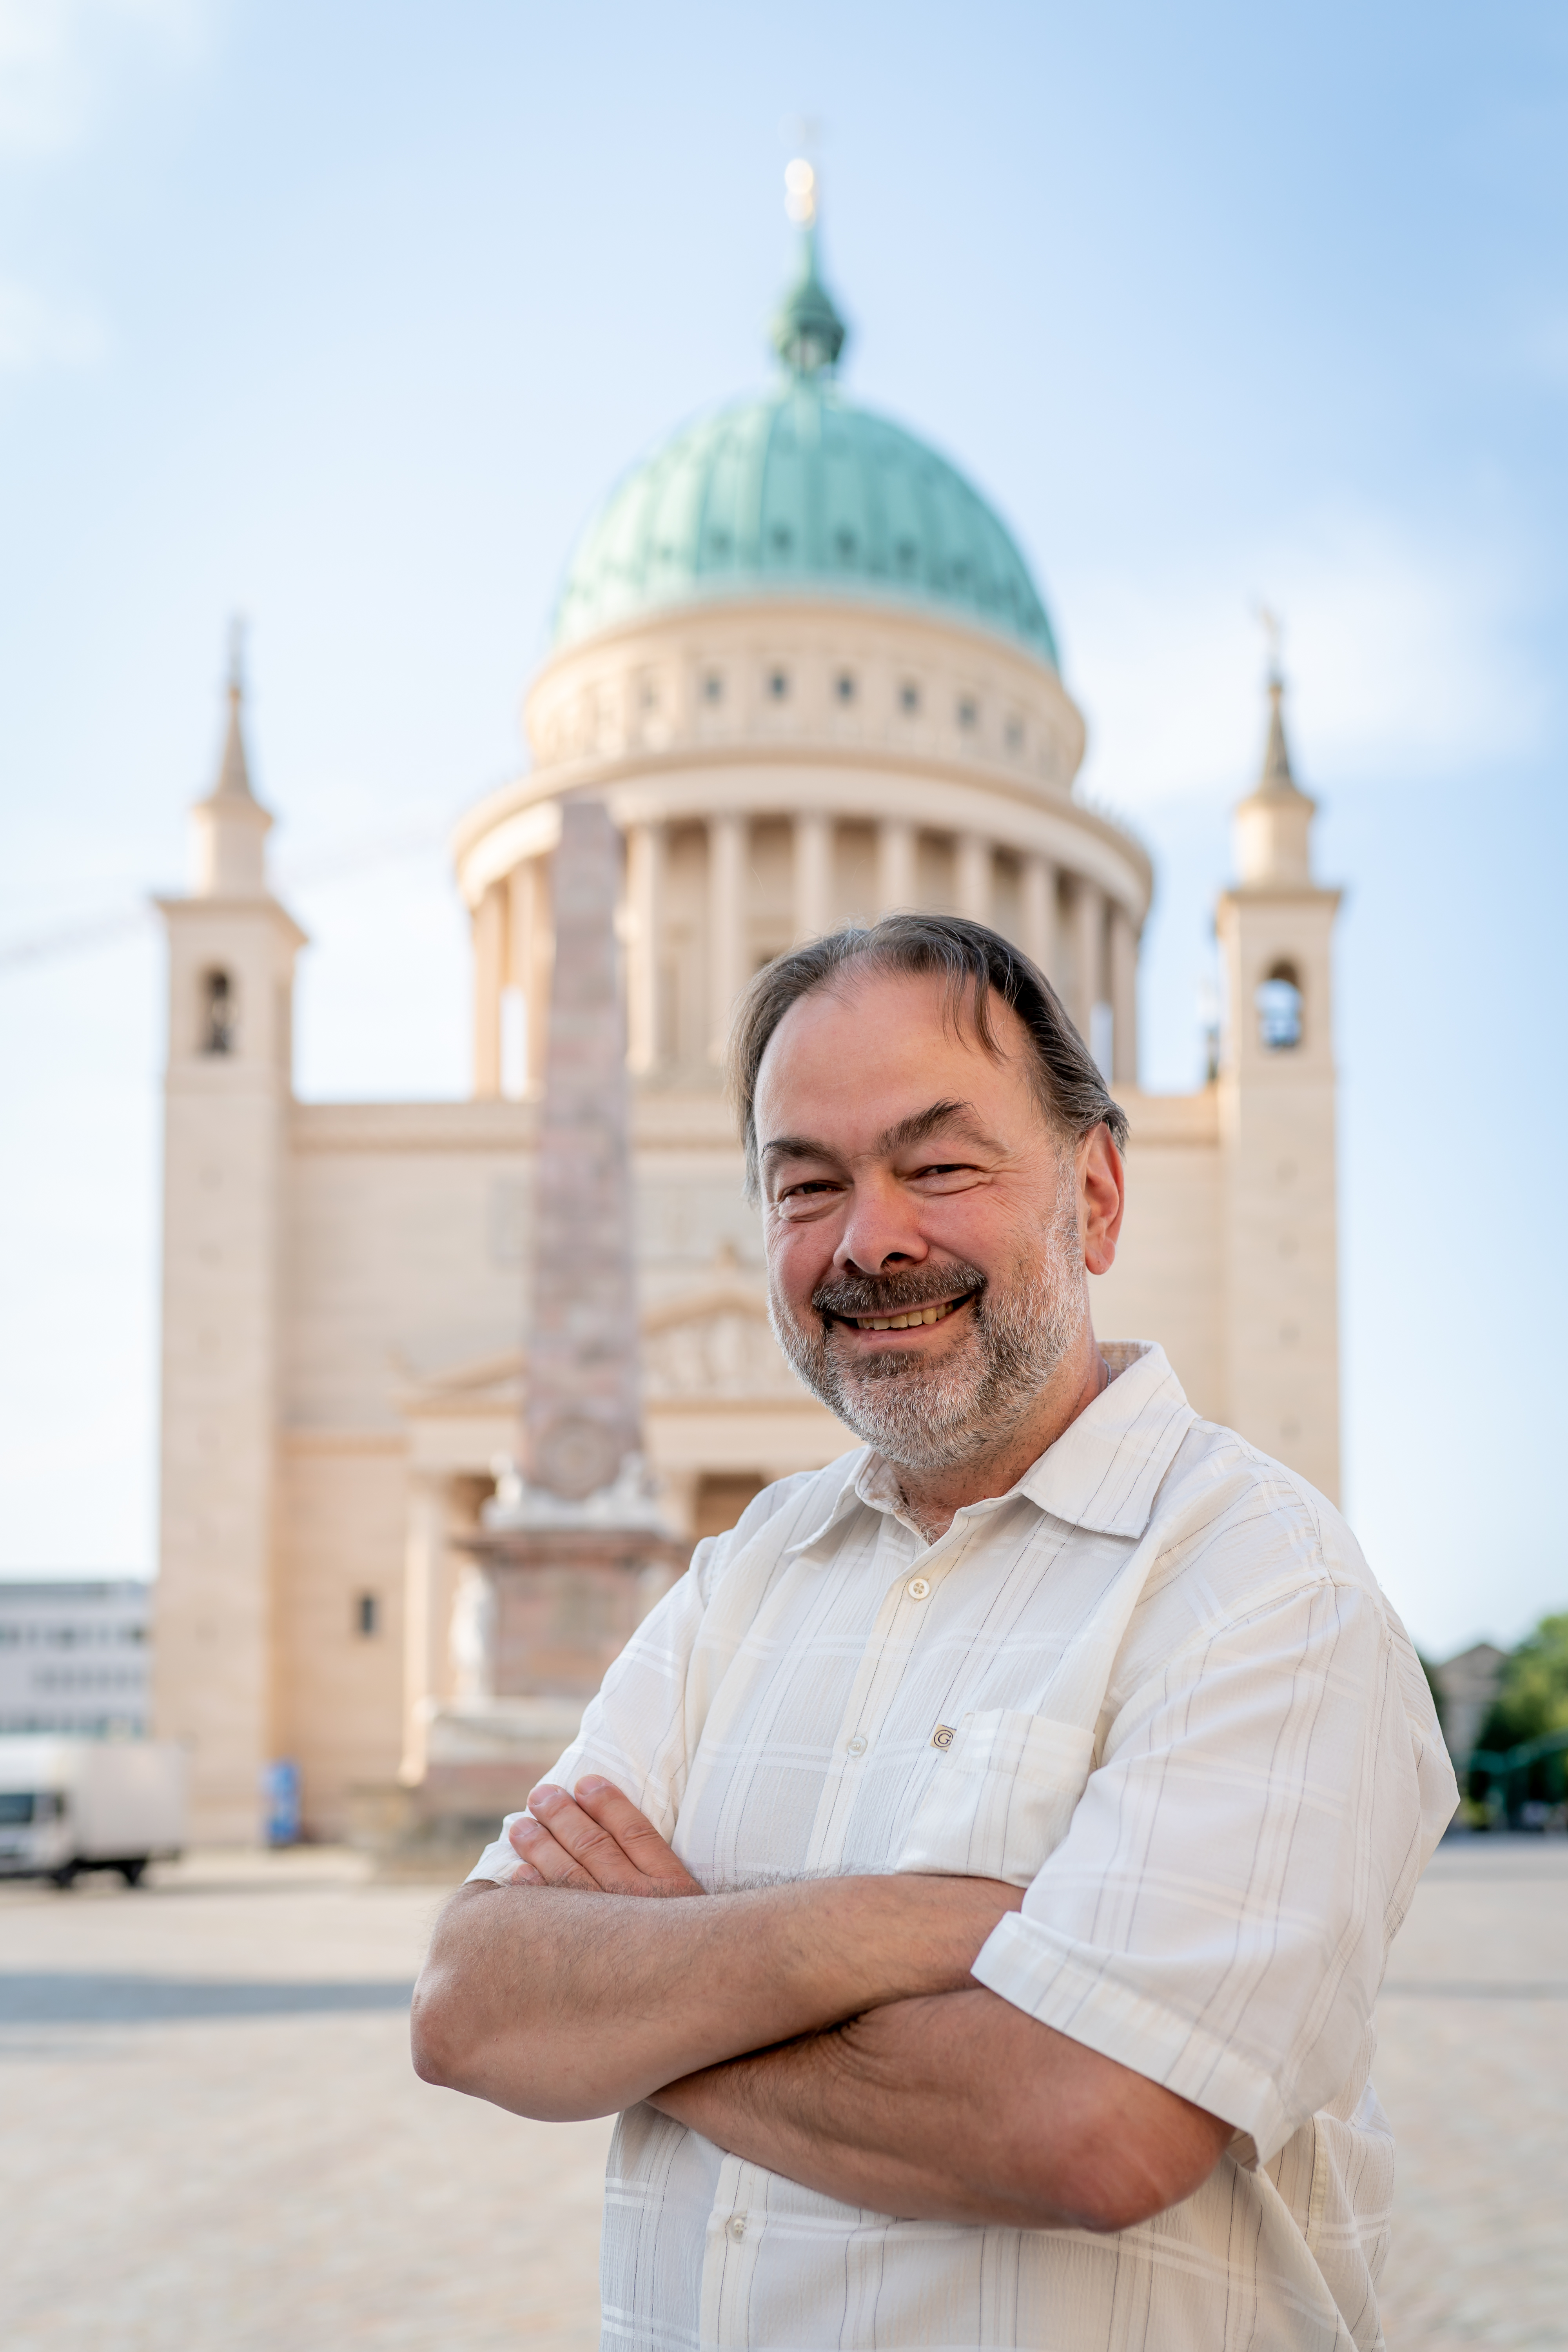 Gemeindekirchenratsmitglied Ralf Beschorner in der St. Nikolaikirche Potsdam